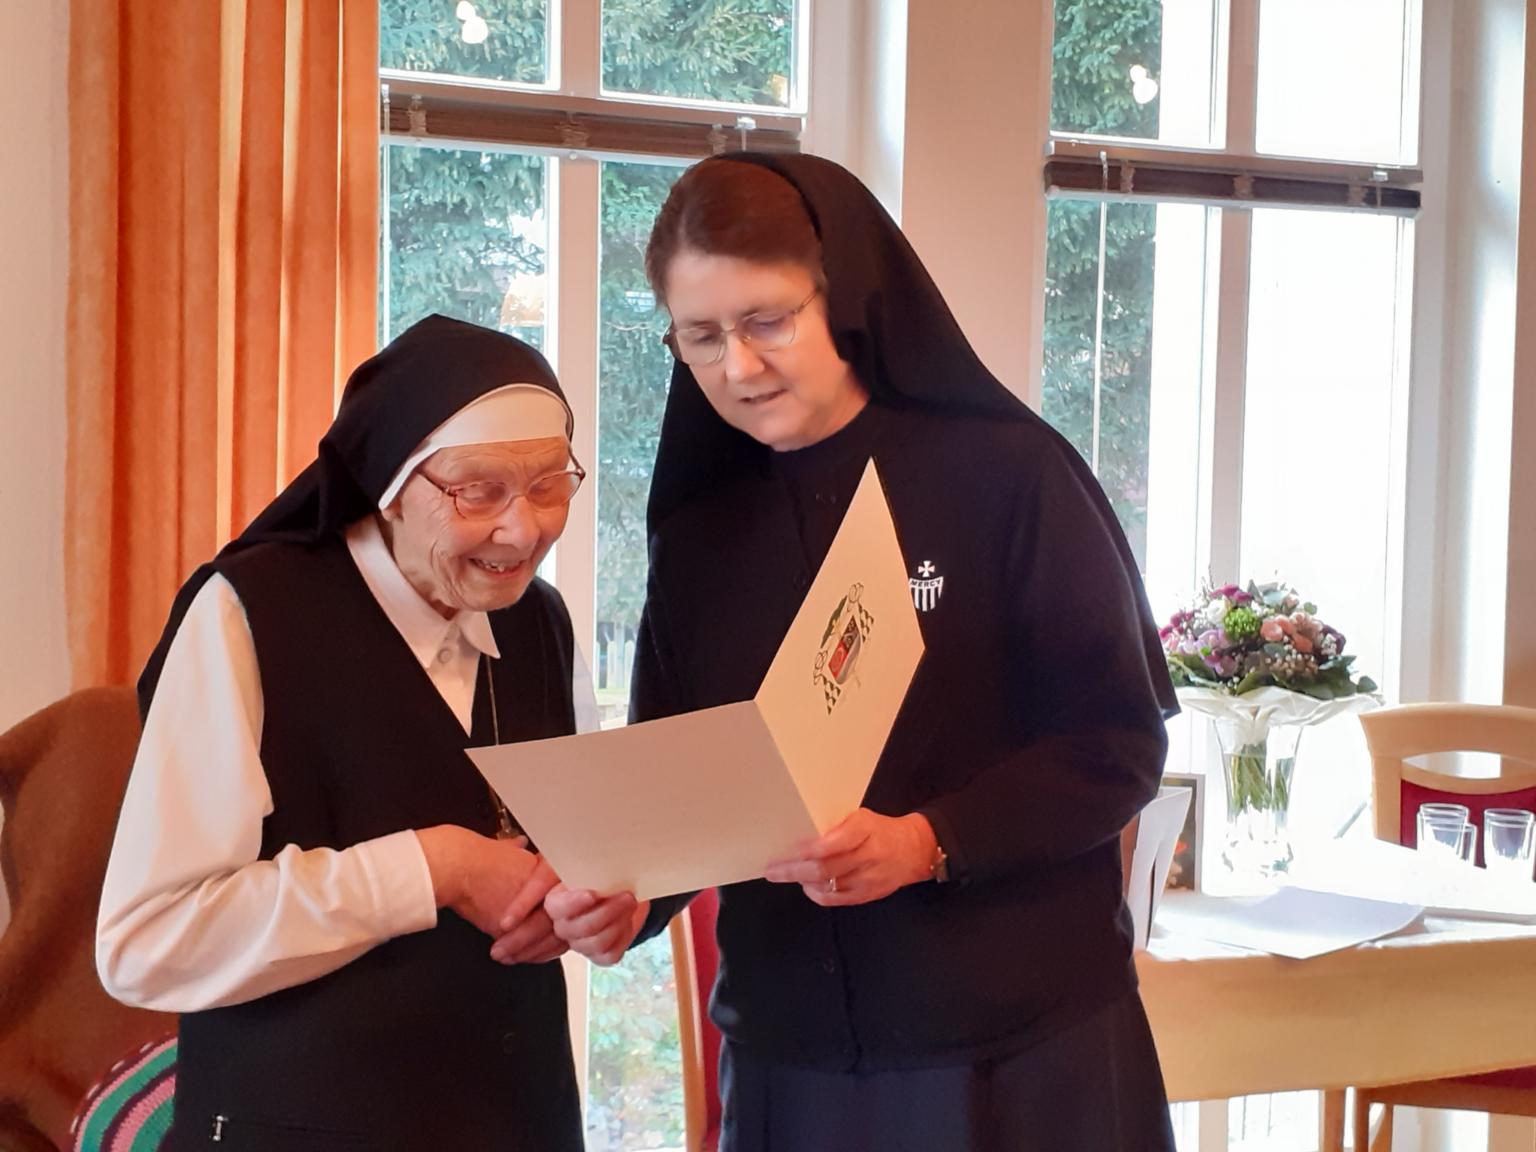 DIe Ordensreferentin überreicht Sr. Philaretha die Gratulations-Urkunde unseres Bischofs (c) Sr. Mary Helena Hopf RSM